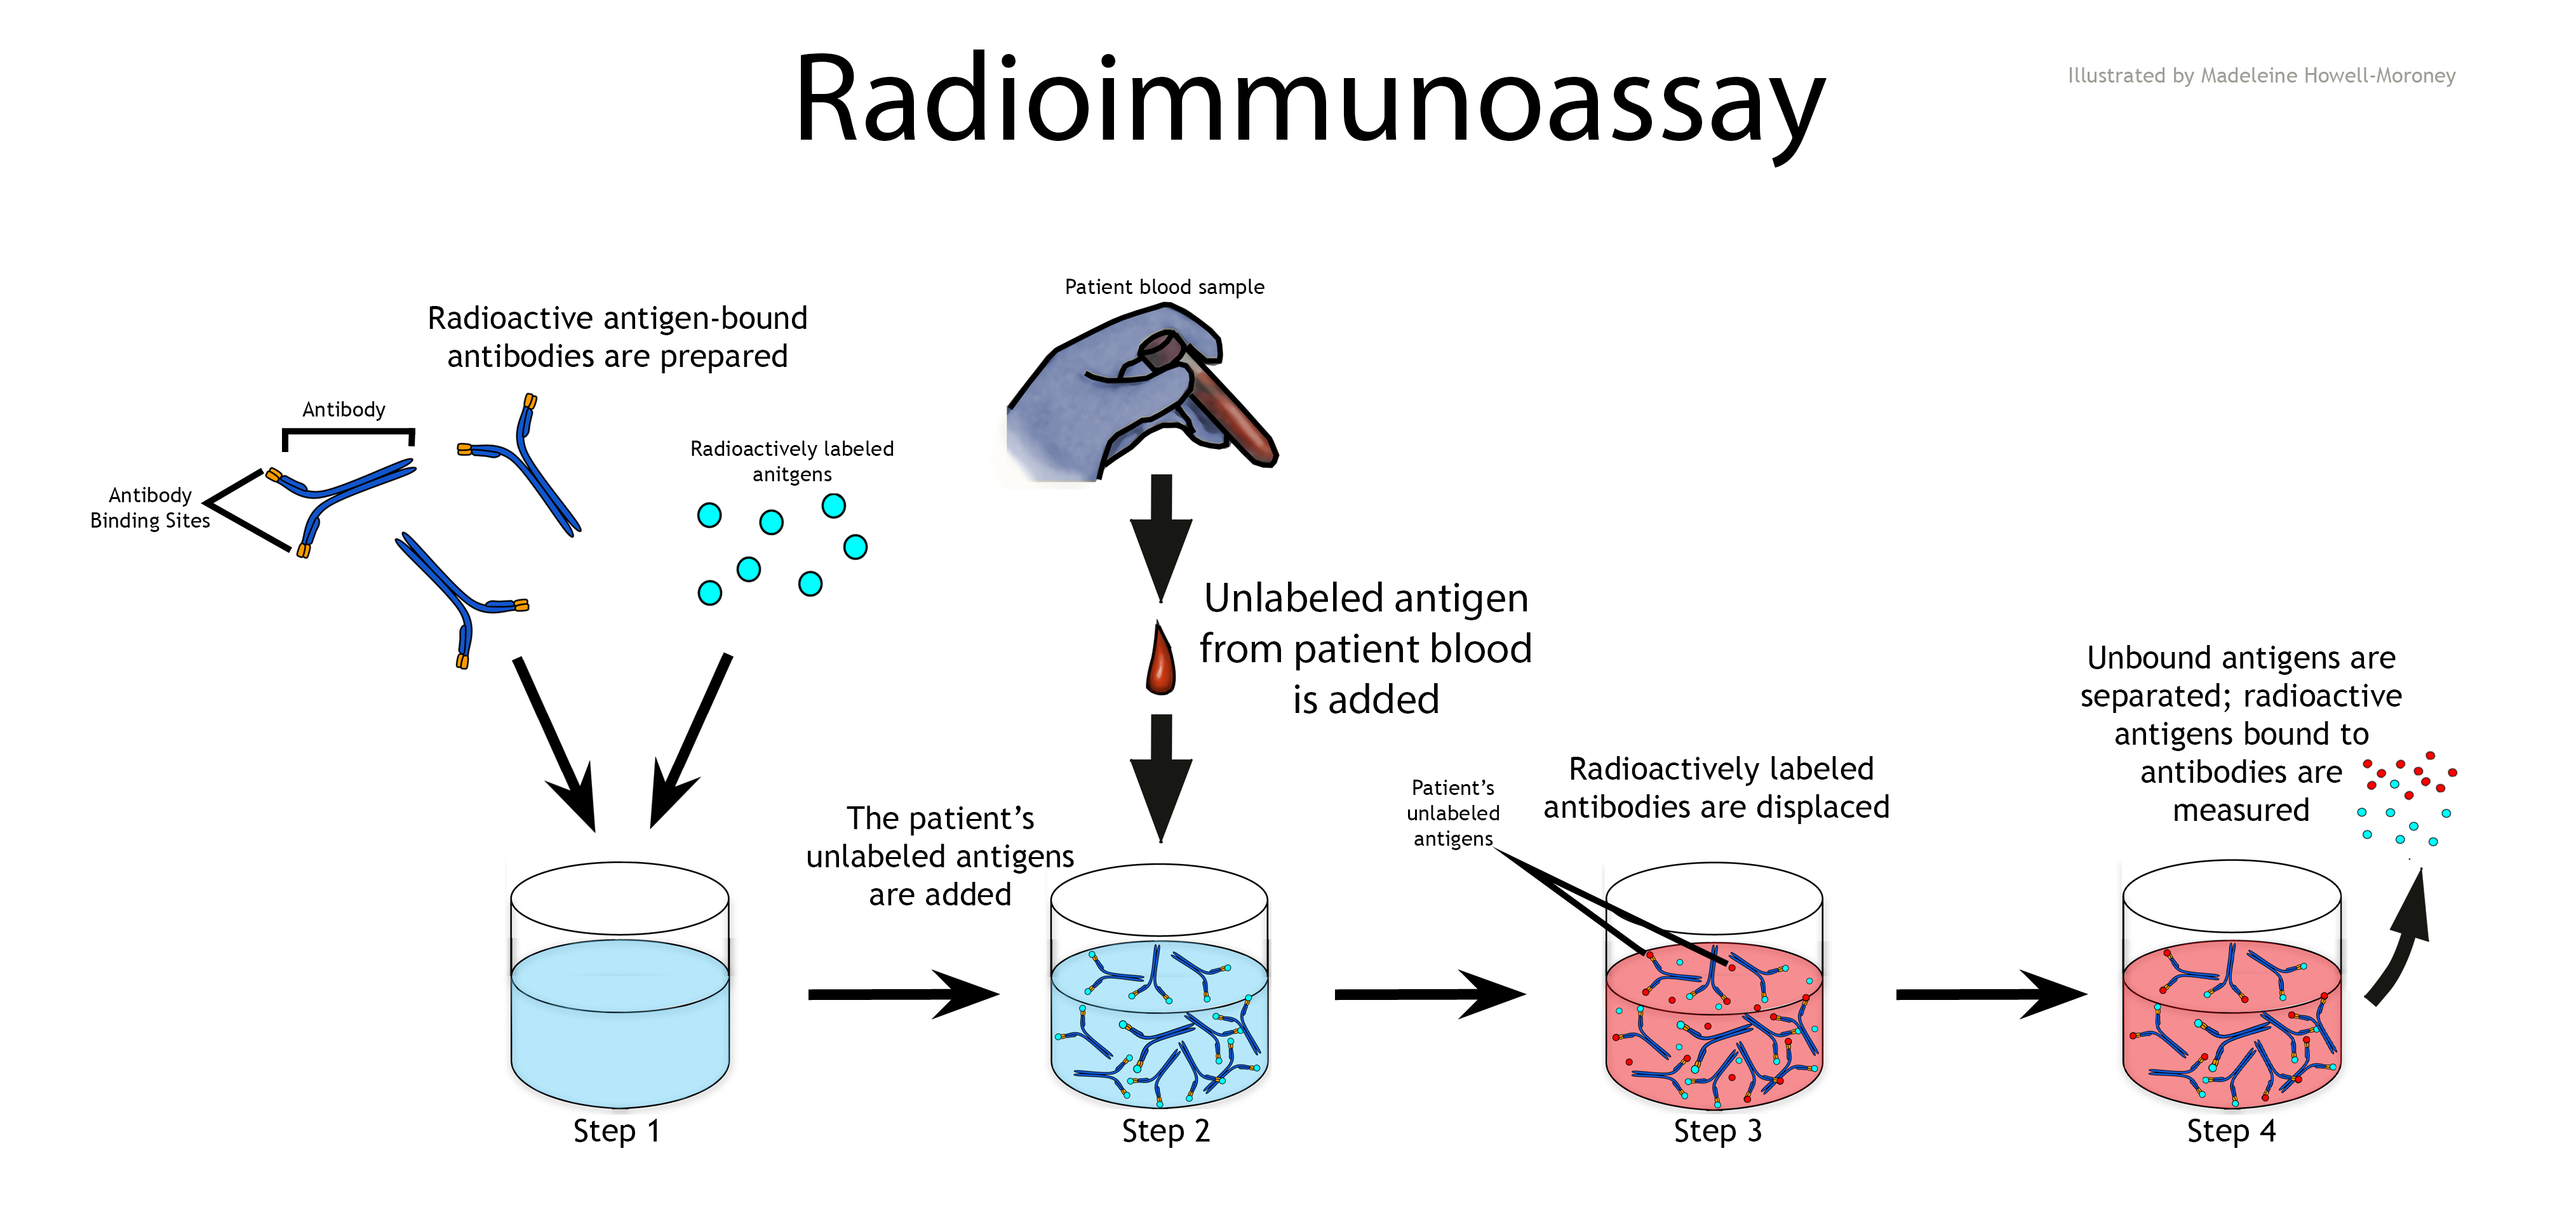 an illustration of a radioimmunoassay